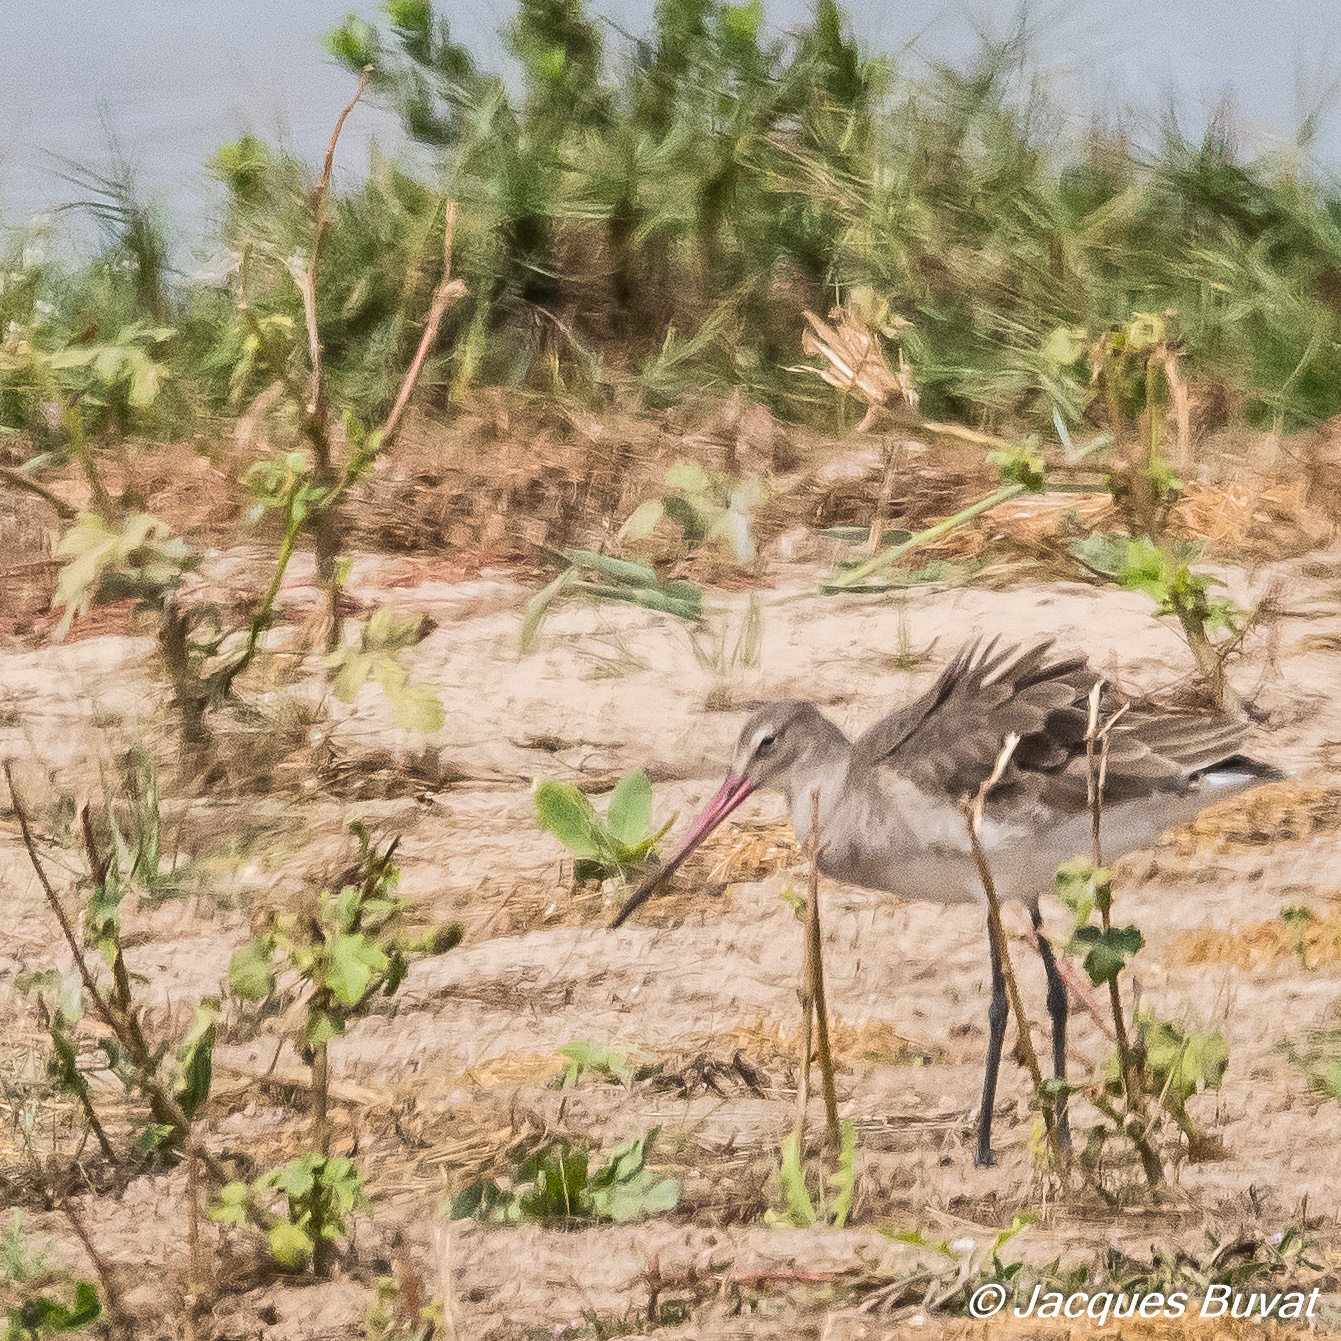 Barge à queue noire (Black-tailed godwit, Limosa limosa), adulte internuptial, Technopole de Pikine, Dakar, Sénégal.